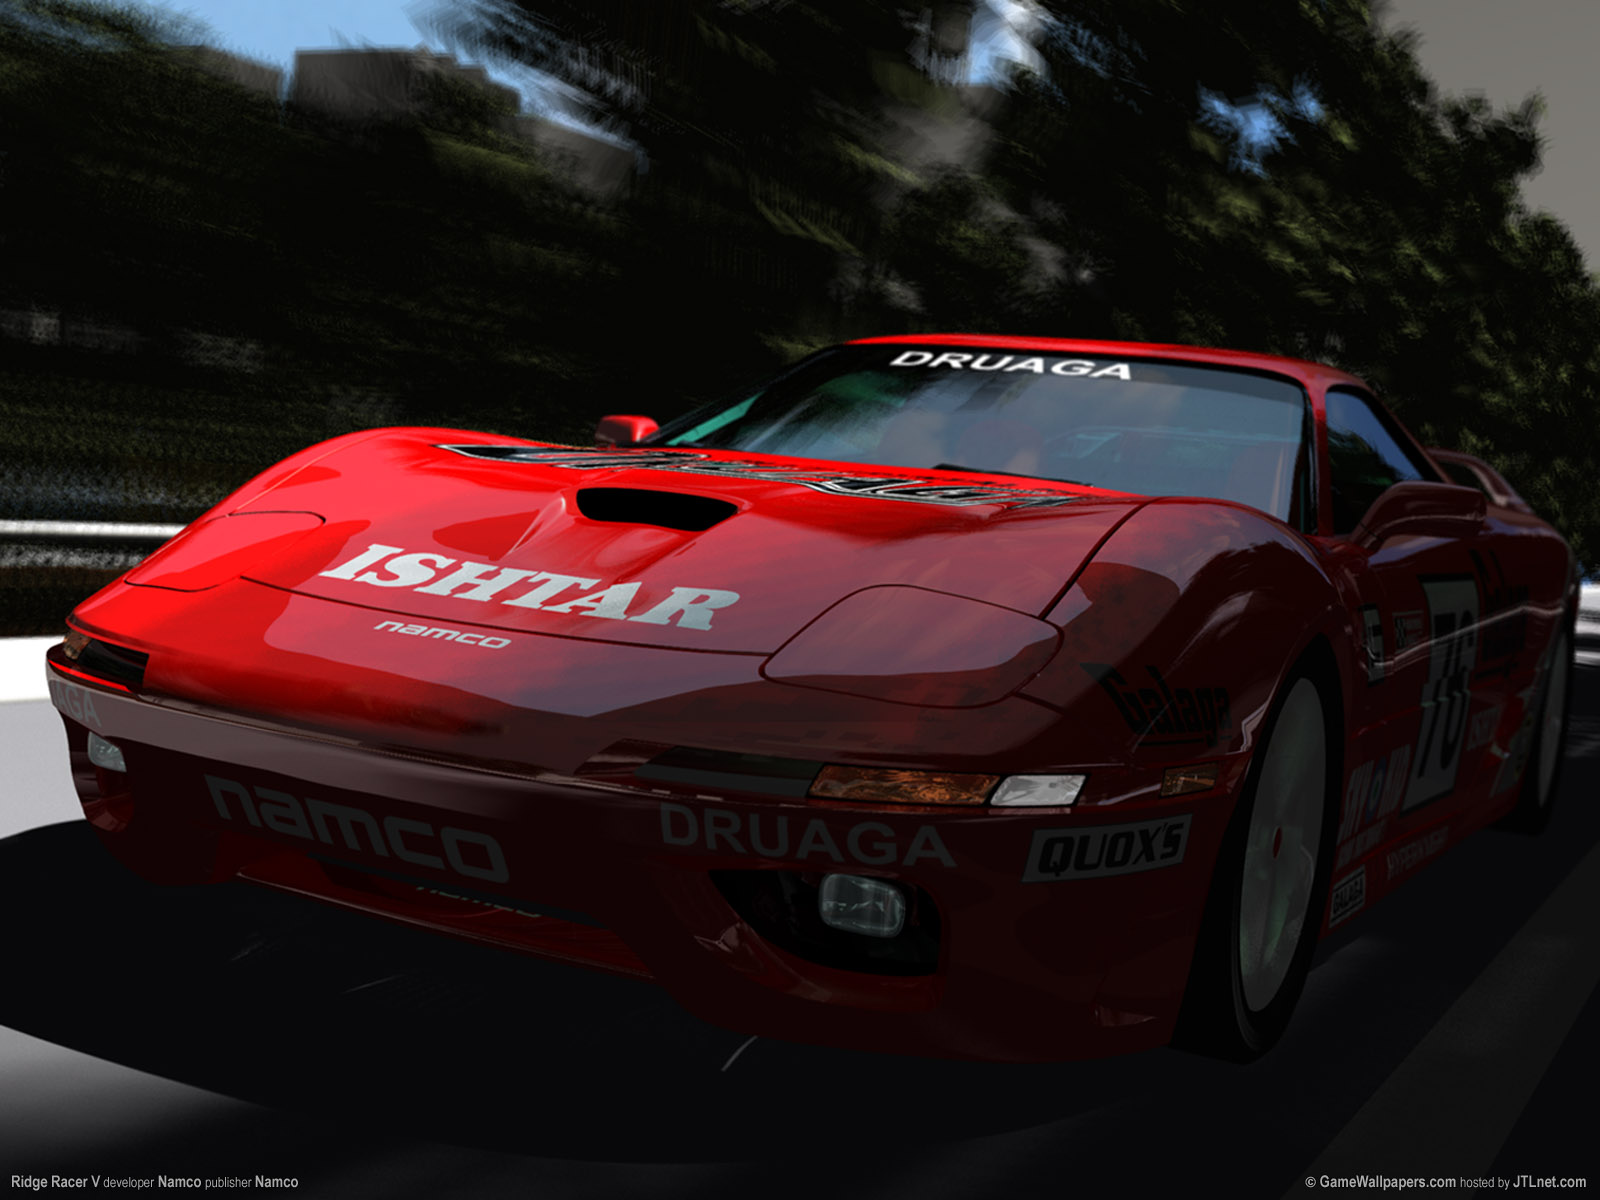 Fond d'écran gratuit de N − R - Ridge Racer numéro 61327